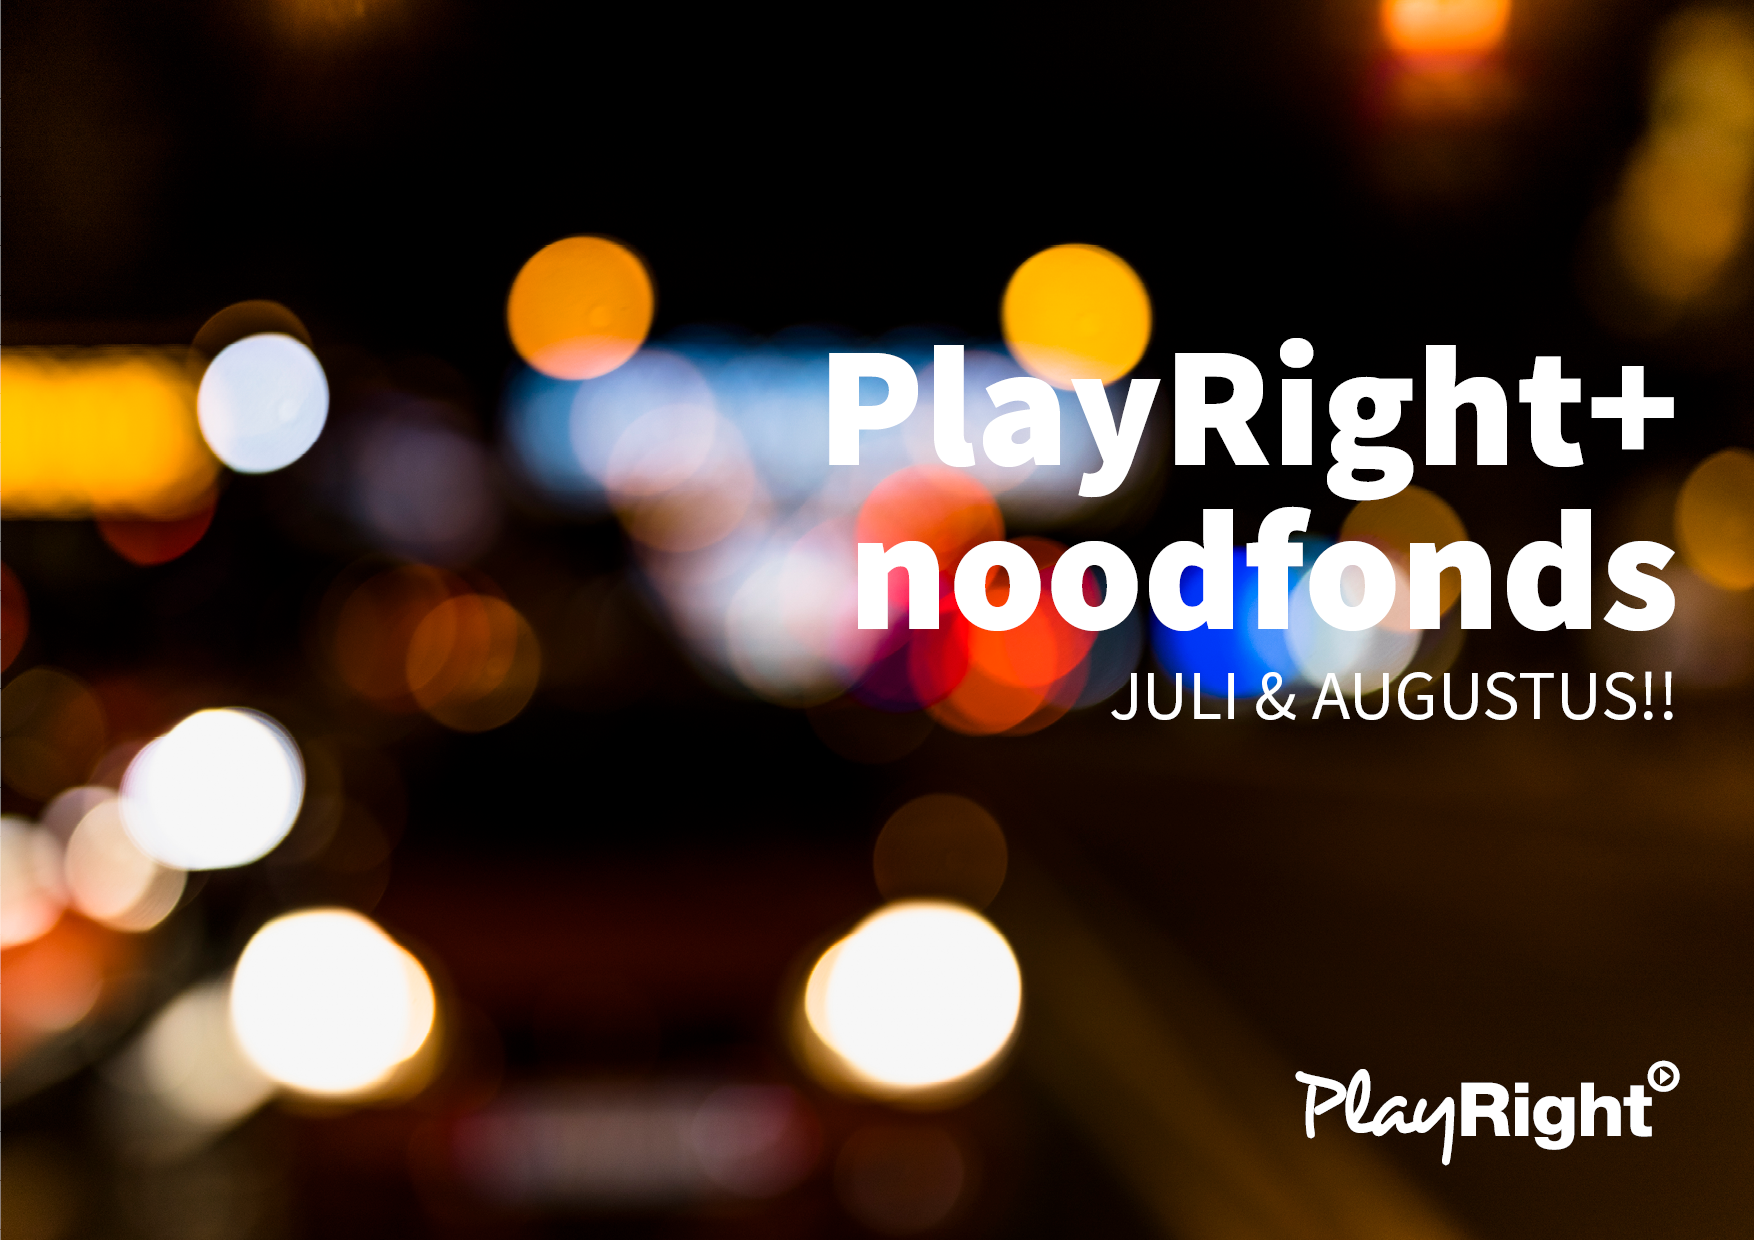 Verlenging PlayRight+ noodfonds, nieuwe Brusselse en Vlaamse premies en een aanpassing van de werkloosheidsregeling – Een update